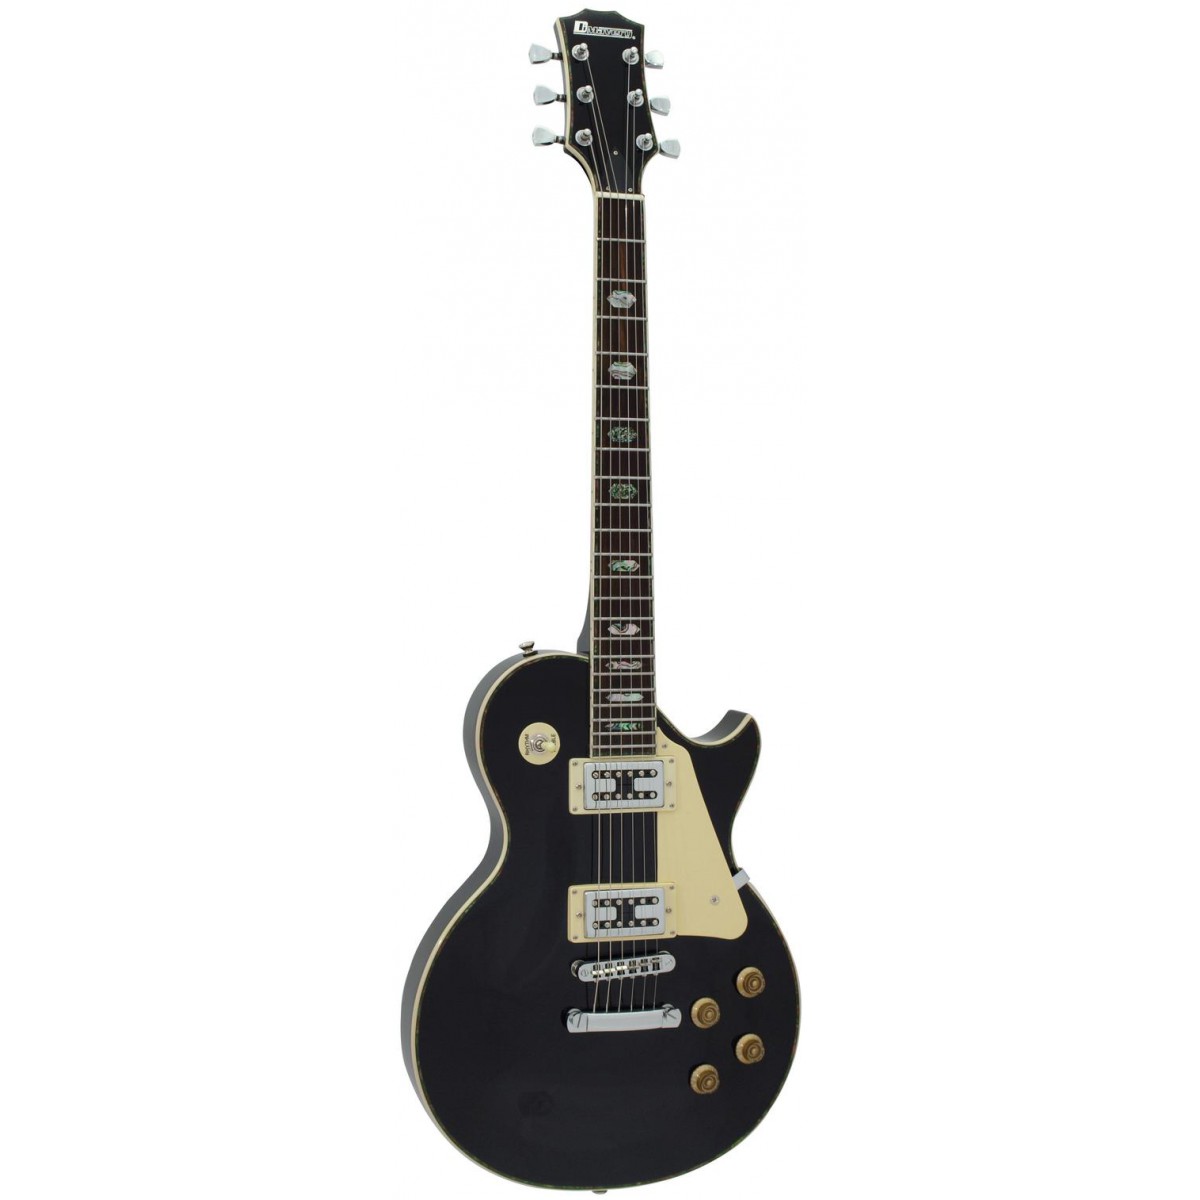 Dimavery elektrická kytara LP-700 elektrická kytara, černá